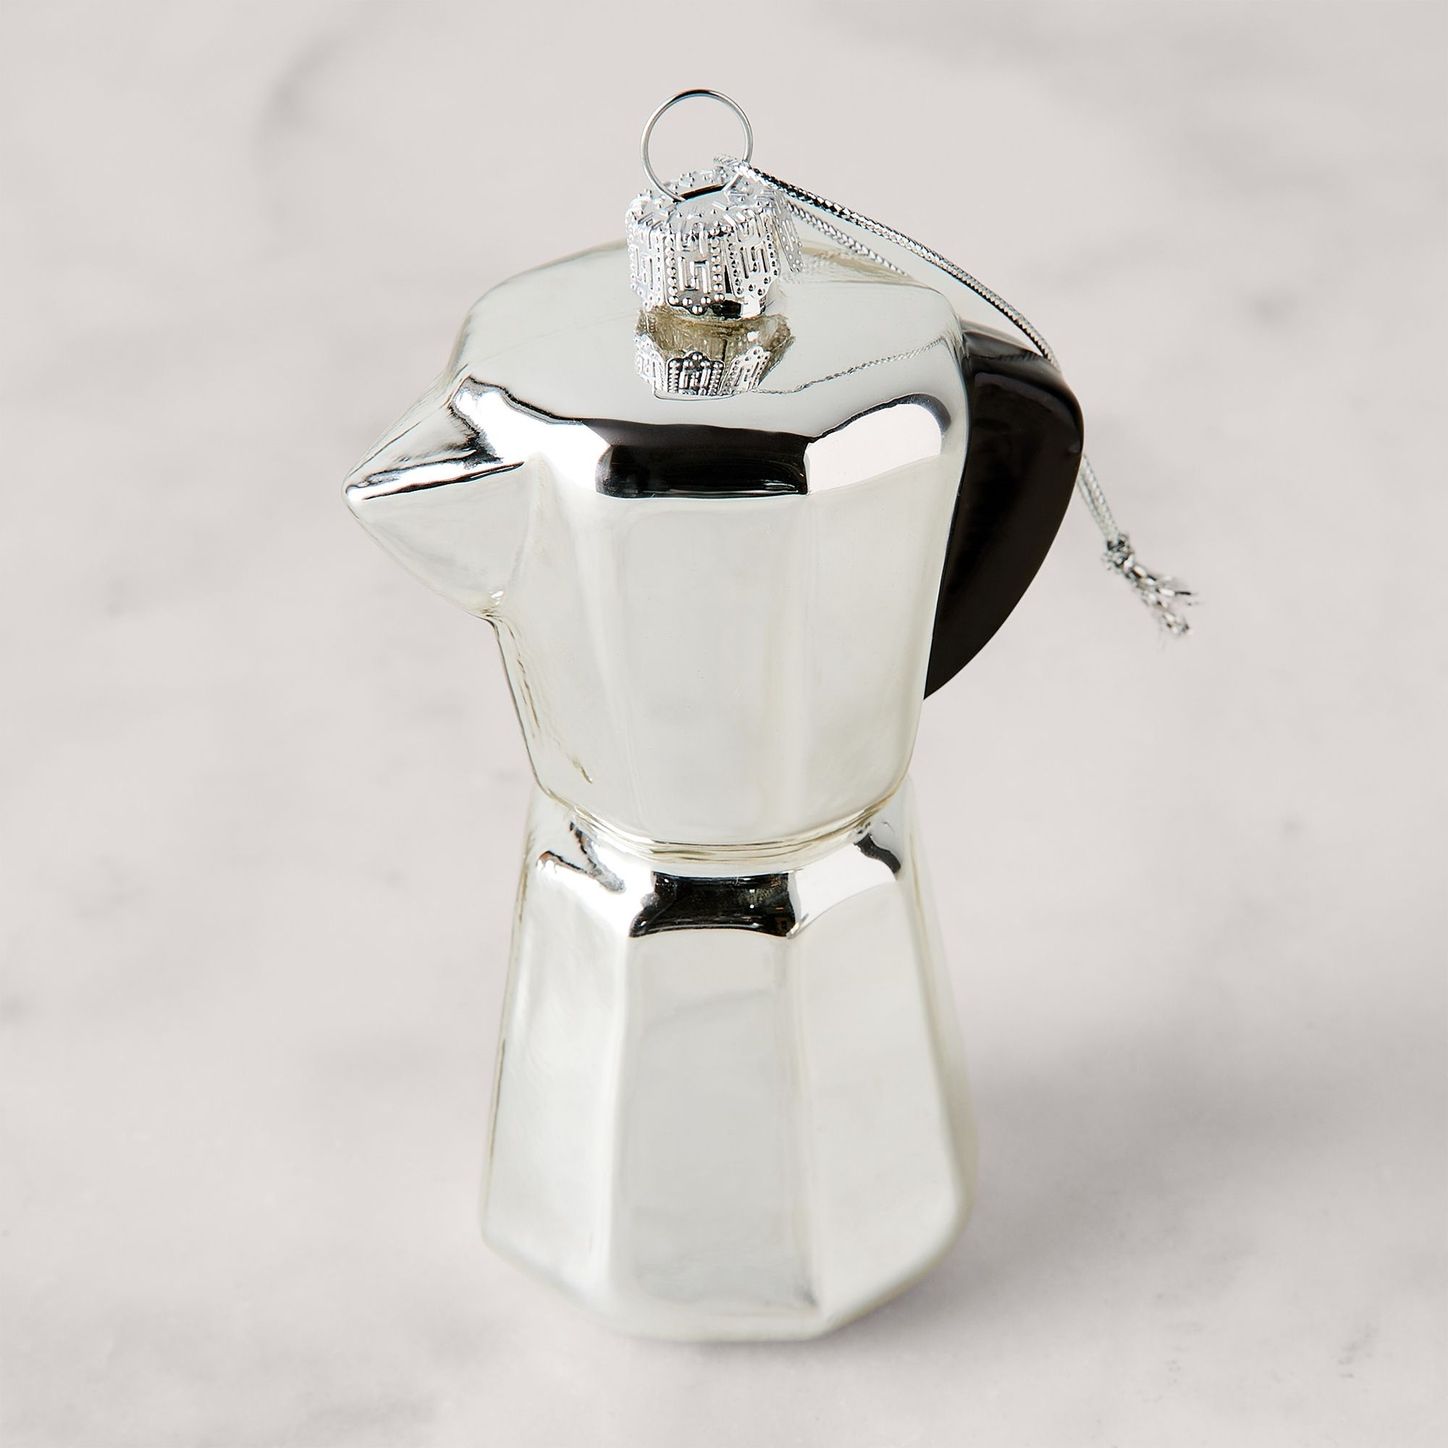 Gift Ideas for Espresso Coffee Lovers - Espresso Canada